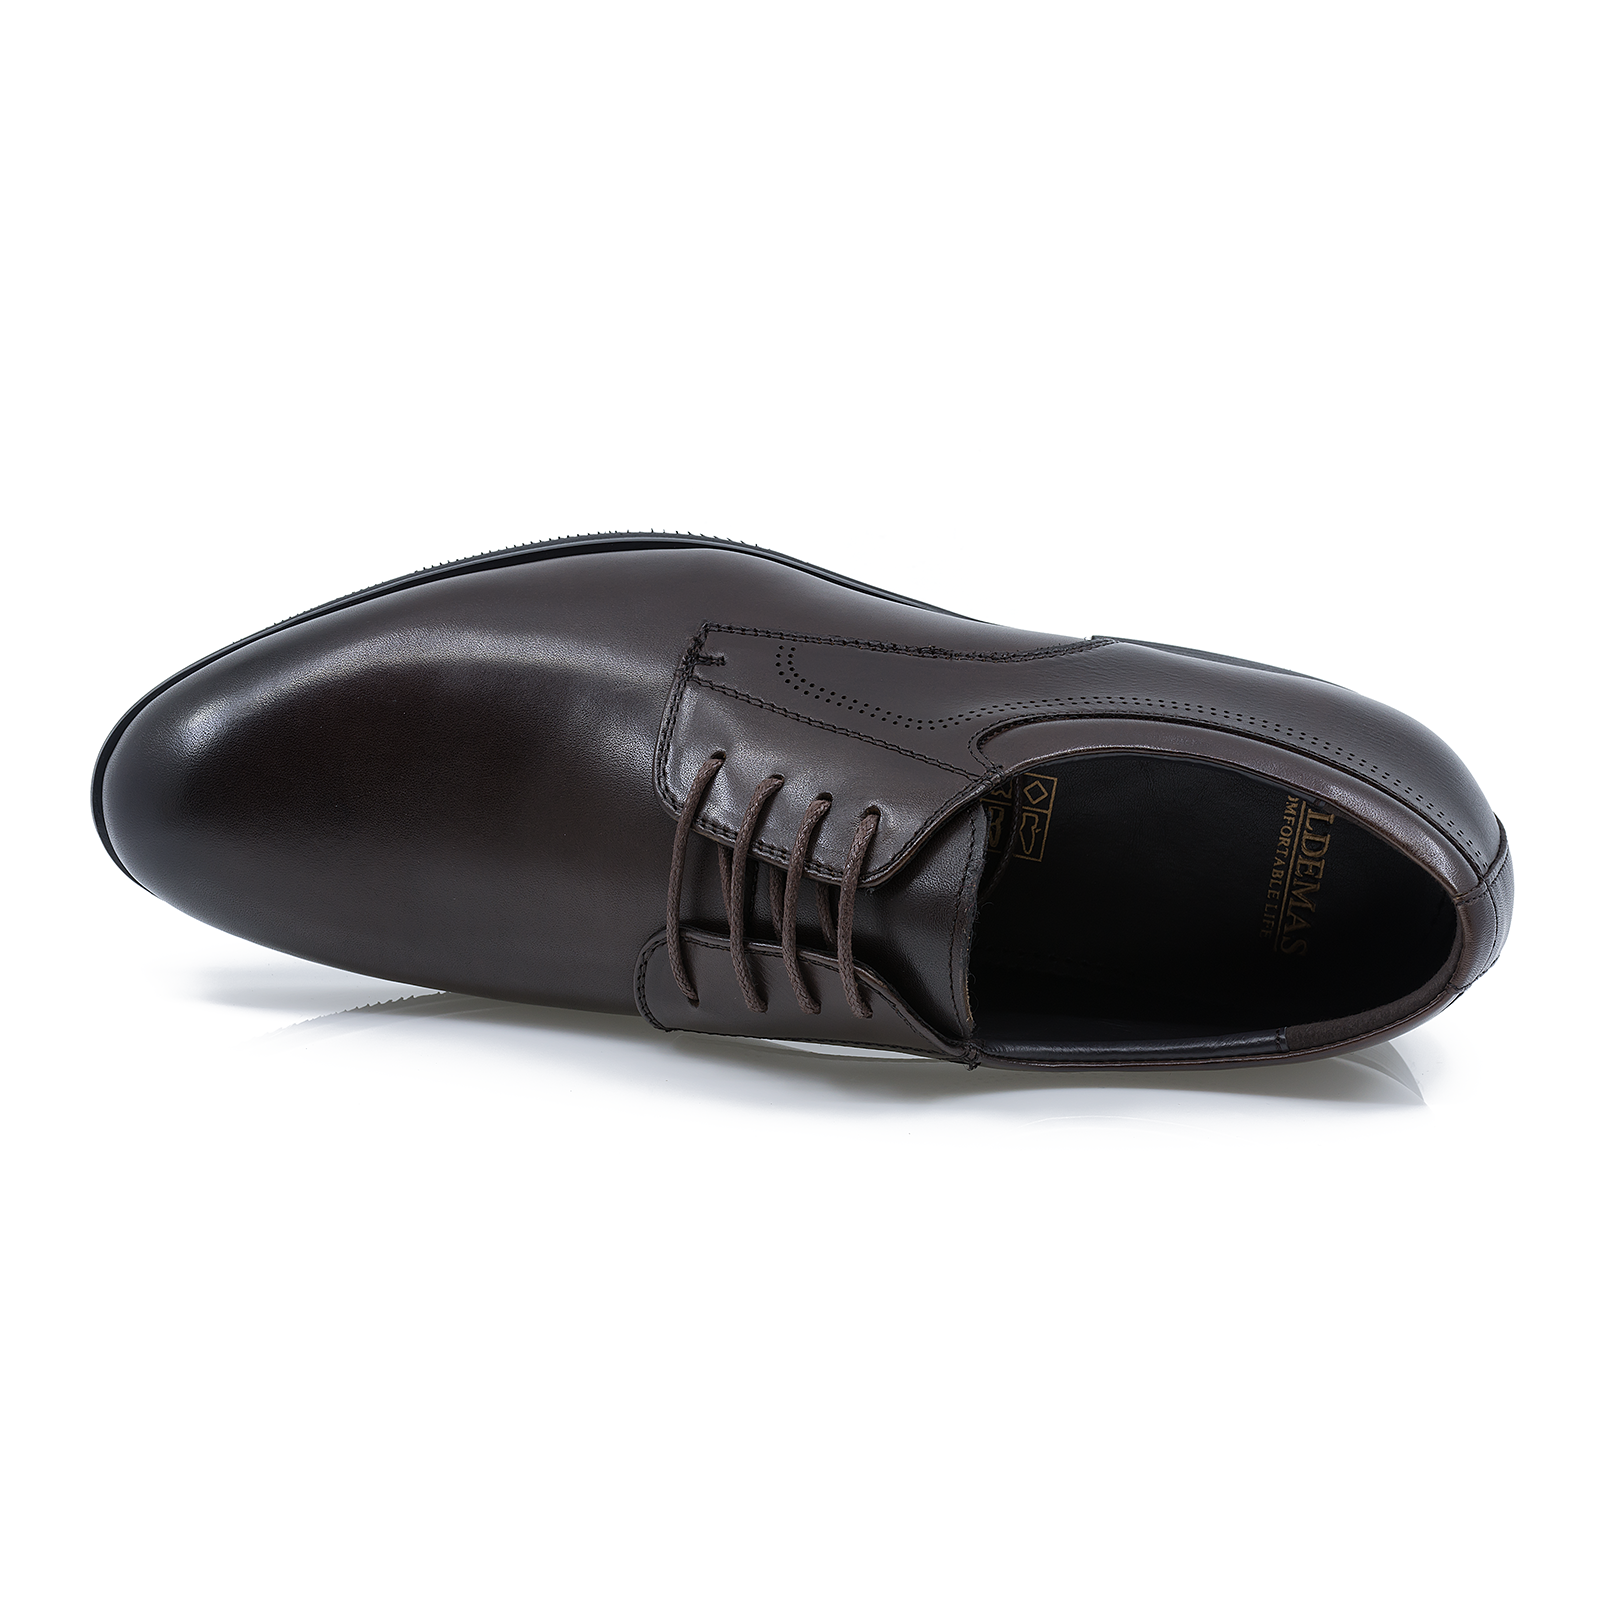 Pantofi-barbati-ELDEMAS-F4155-362-eleganti-piele-naturala-maro-nouamoda.ro-3